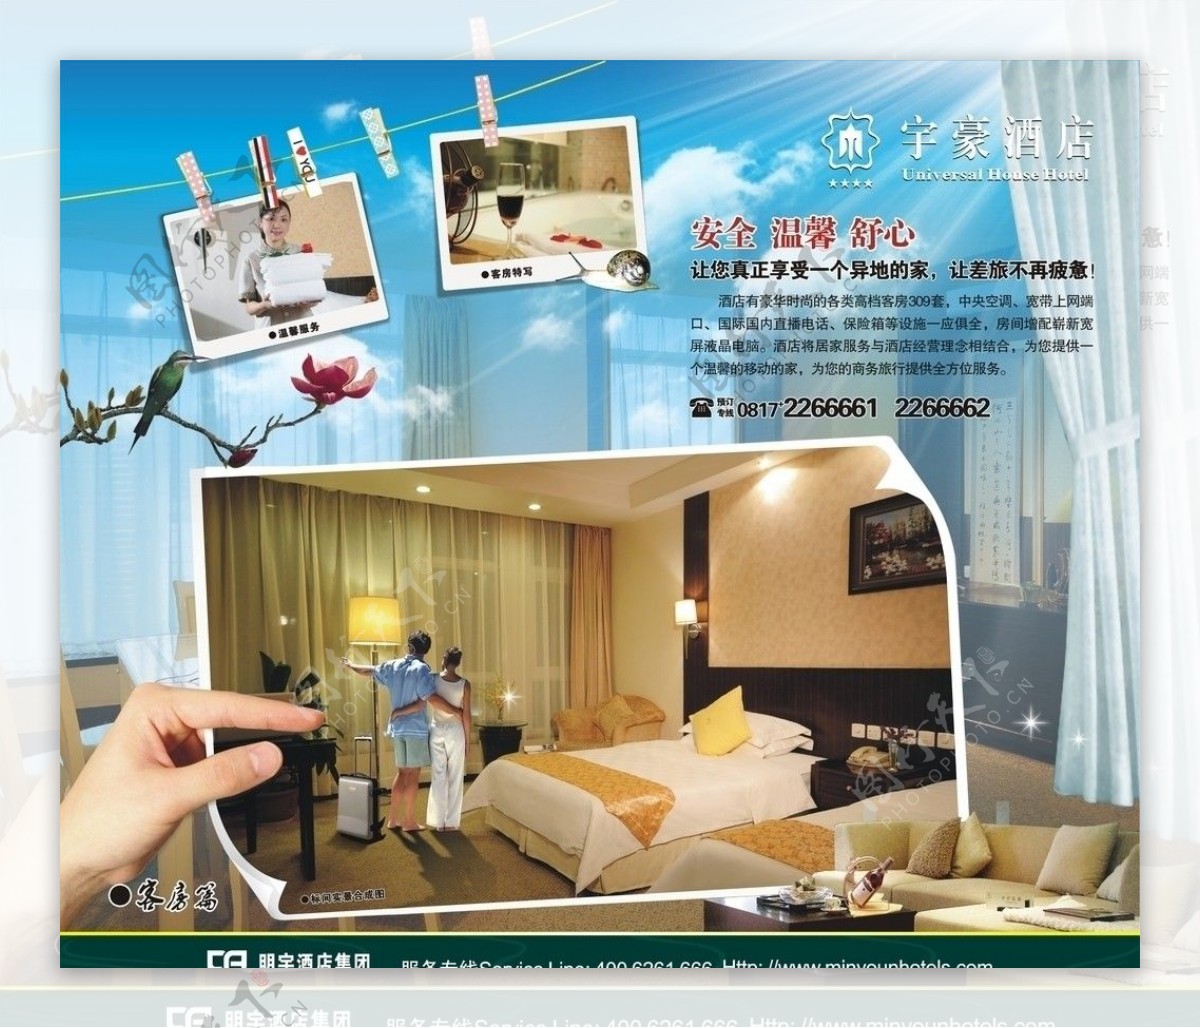 宇豪酒店11年客房宣传广告图片